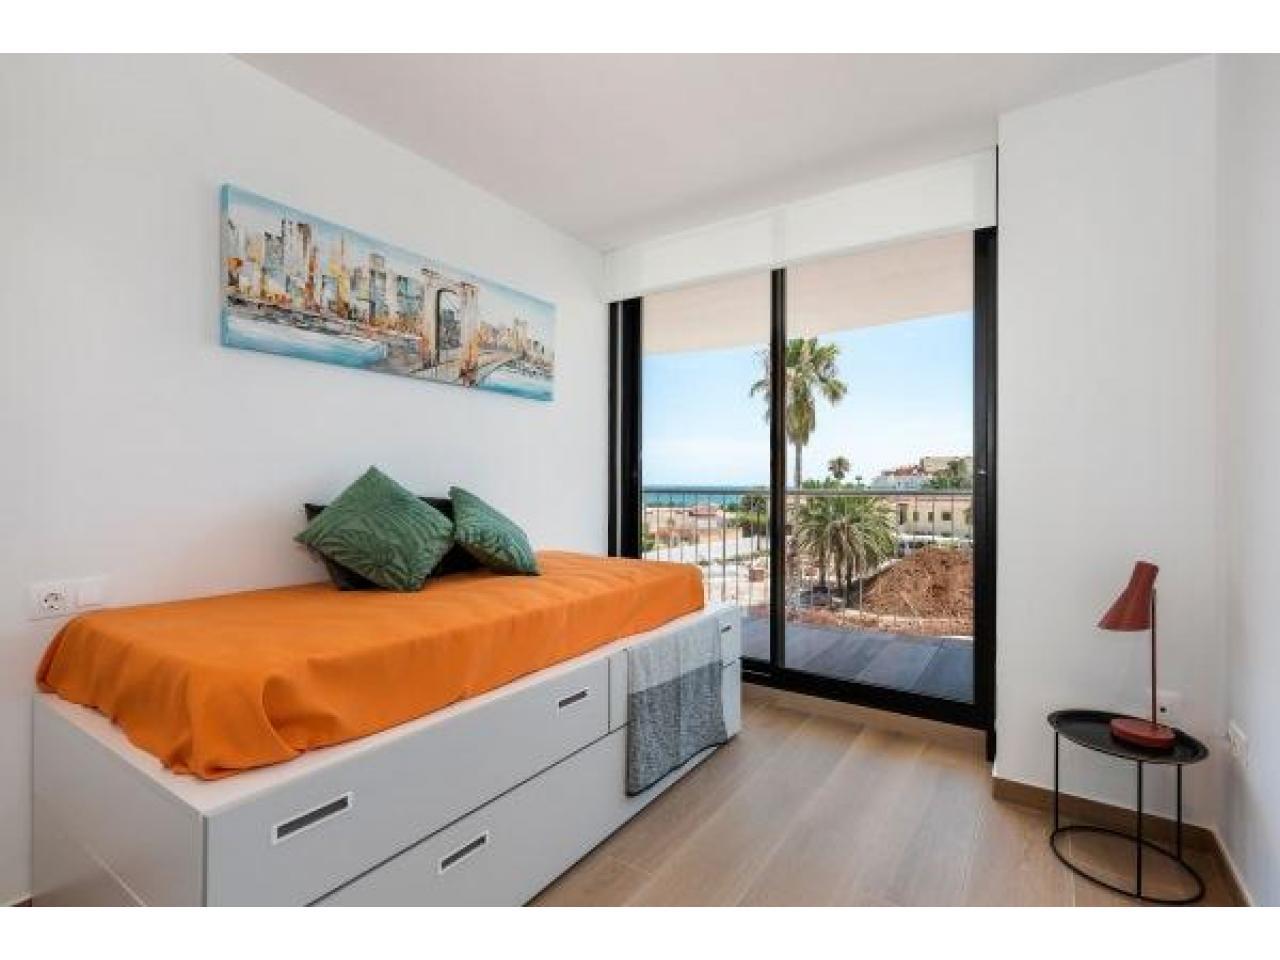 Недвижимость в Испании, Новая квартира от застройщика в видами на море в Дения,Коста Бланка,Испания - 7